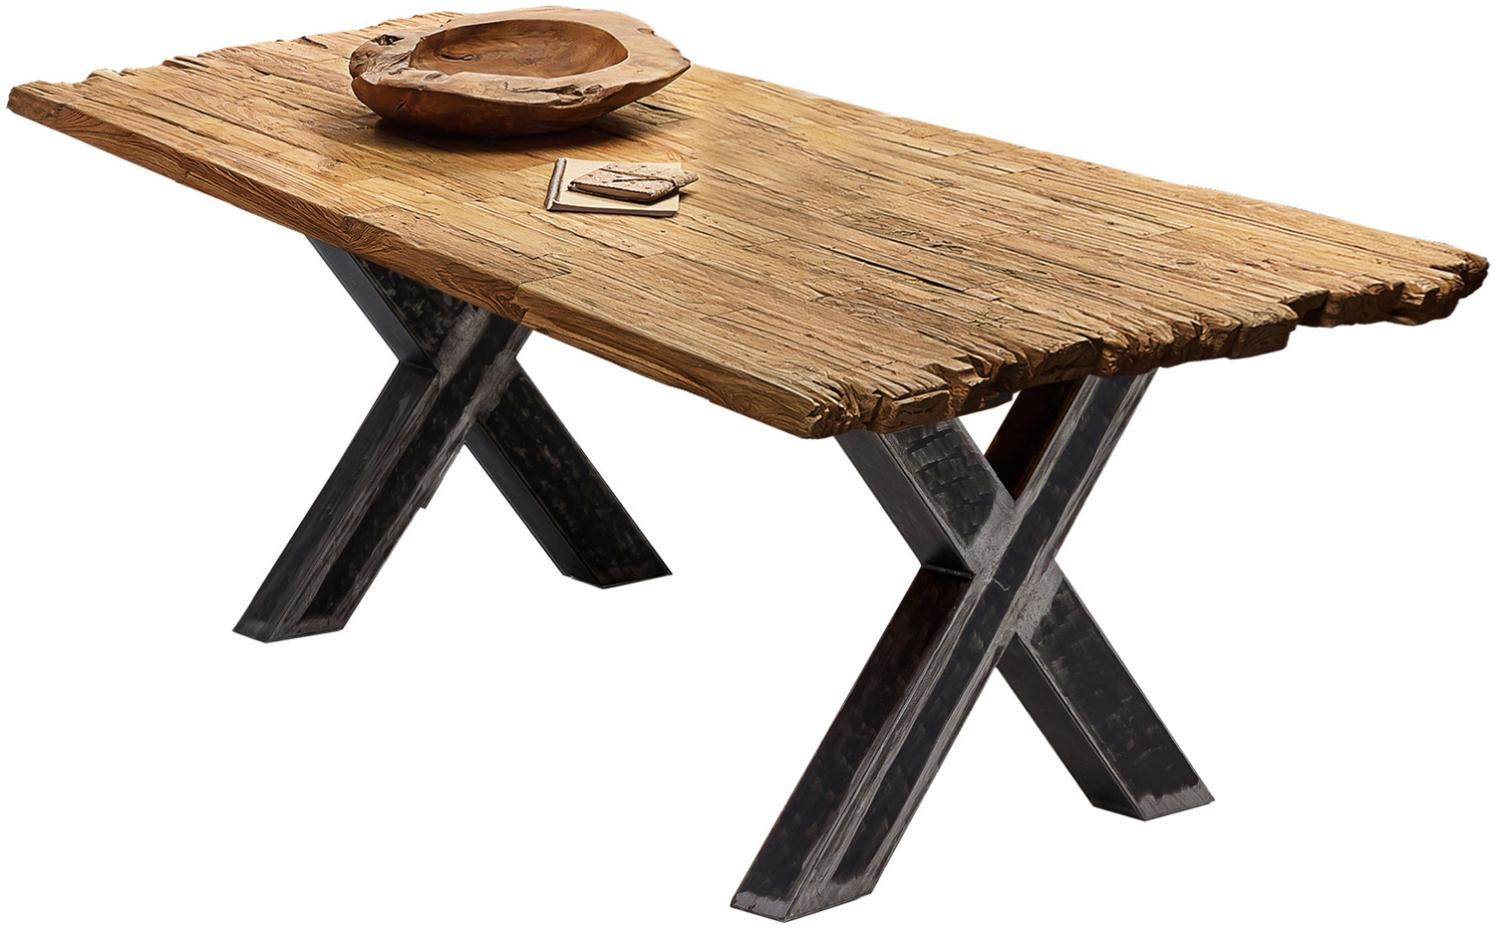 Sit Möbel Tische & Bänke Tisch 200x100 cm, Platte natur, recyceltes Teakholz, X-Gestell Metall used look, klar lackiert Bild 1